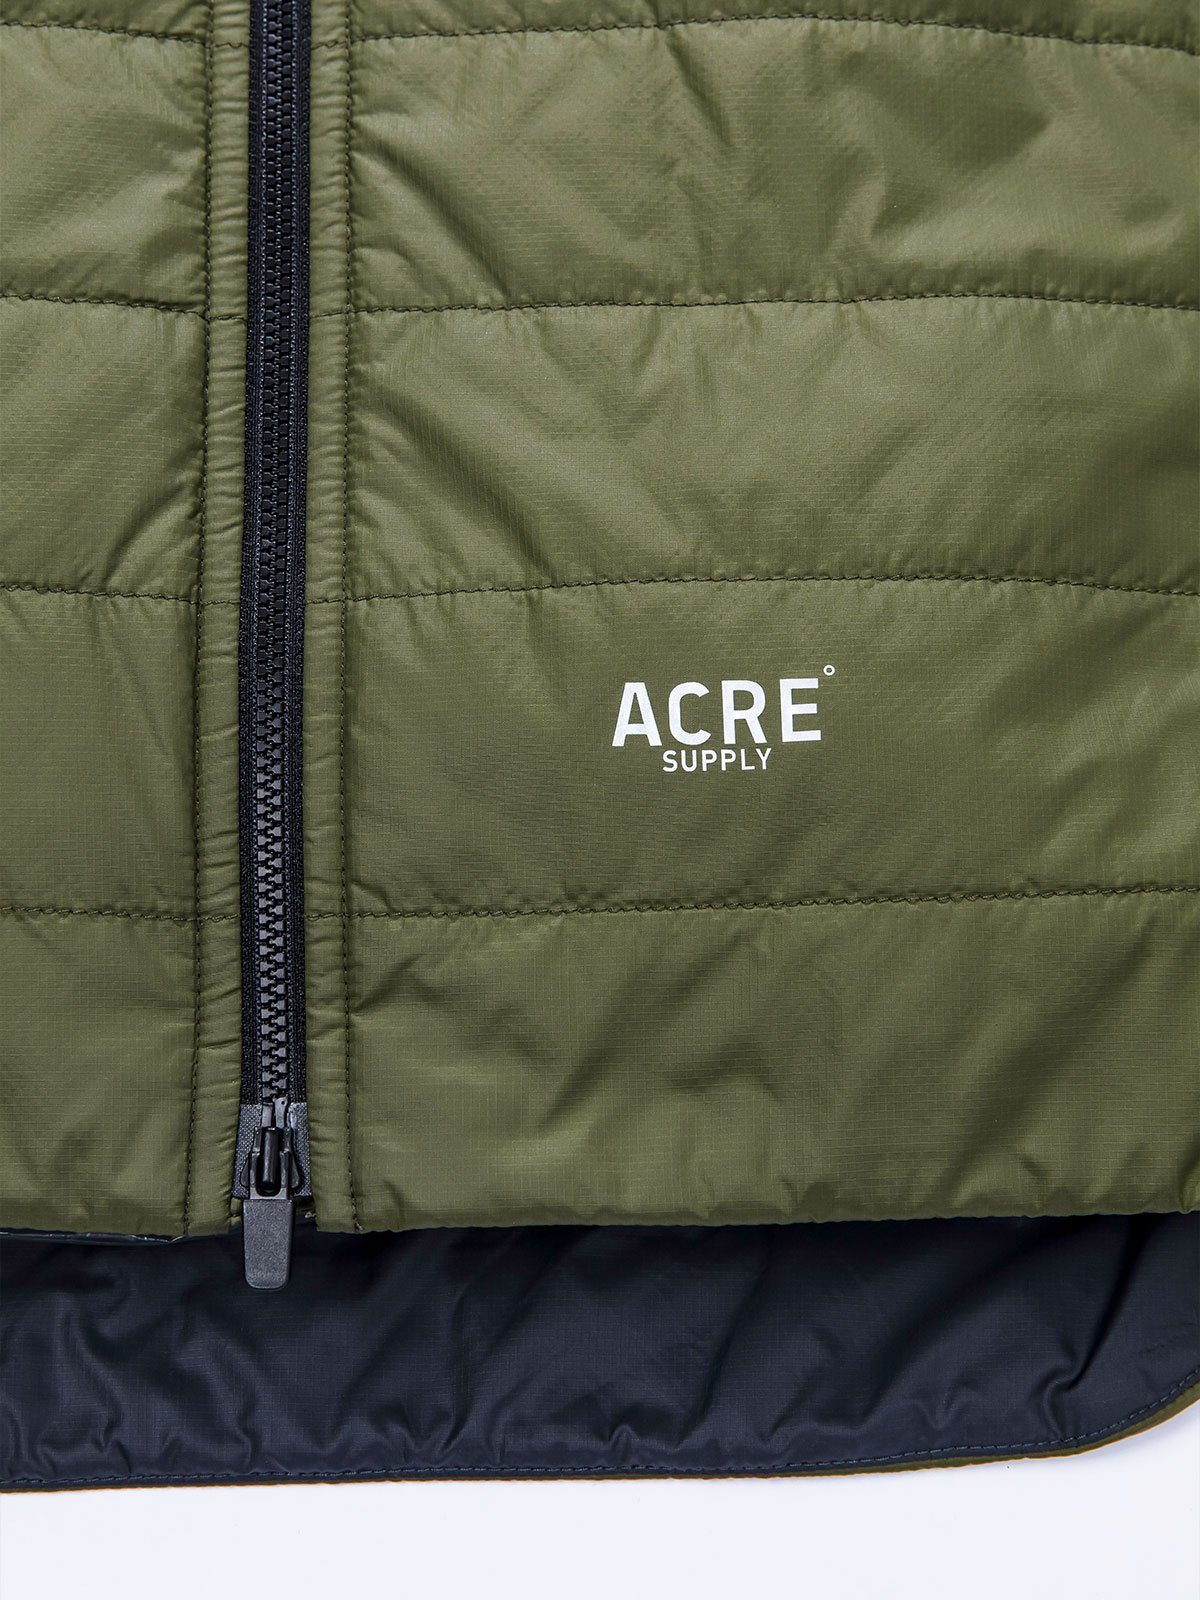 Acre Series Jacket från Mission Workshop - vädertätade väskor och tekniska kläder - San Francisco och Los Angeles - byggd för att tåla - garanterad för alltid